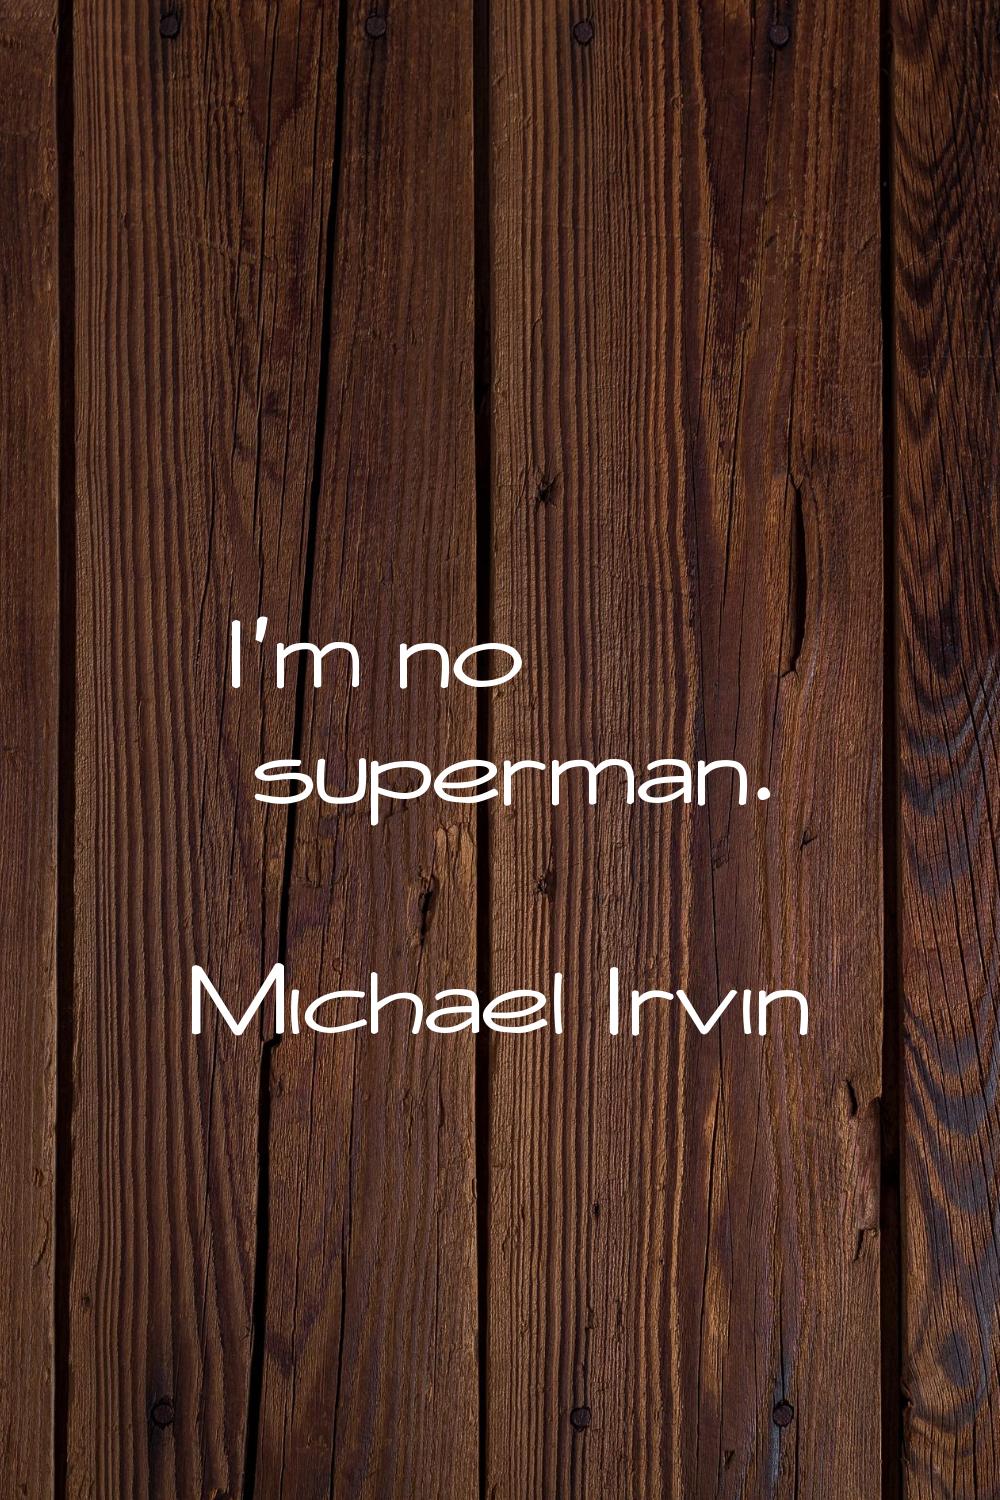 I'm no superman.